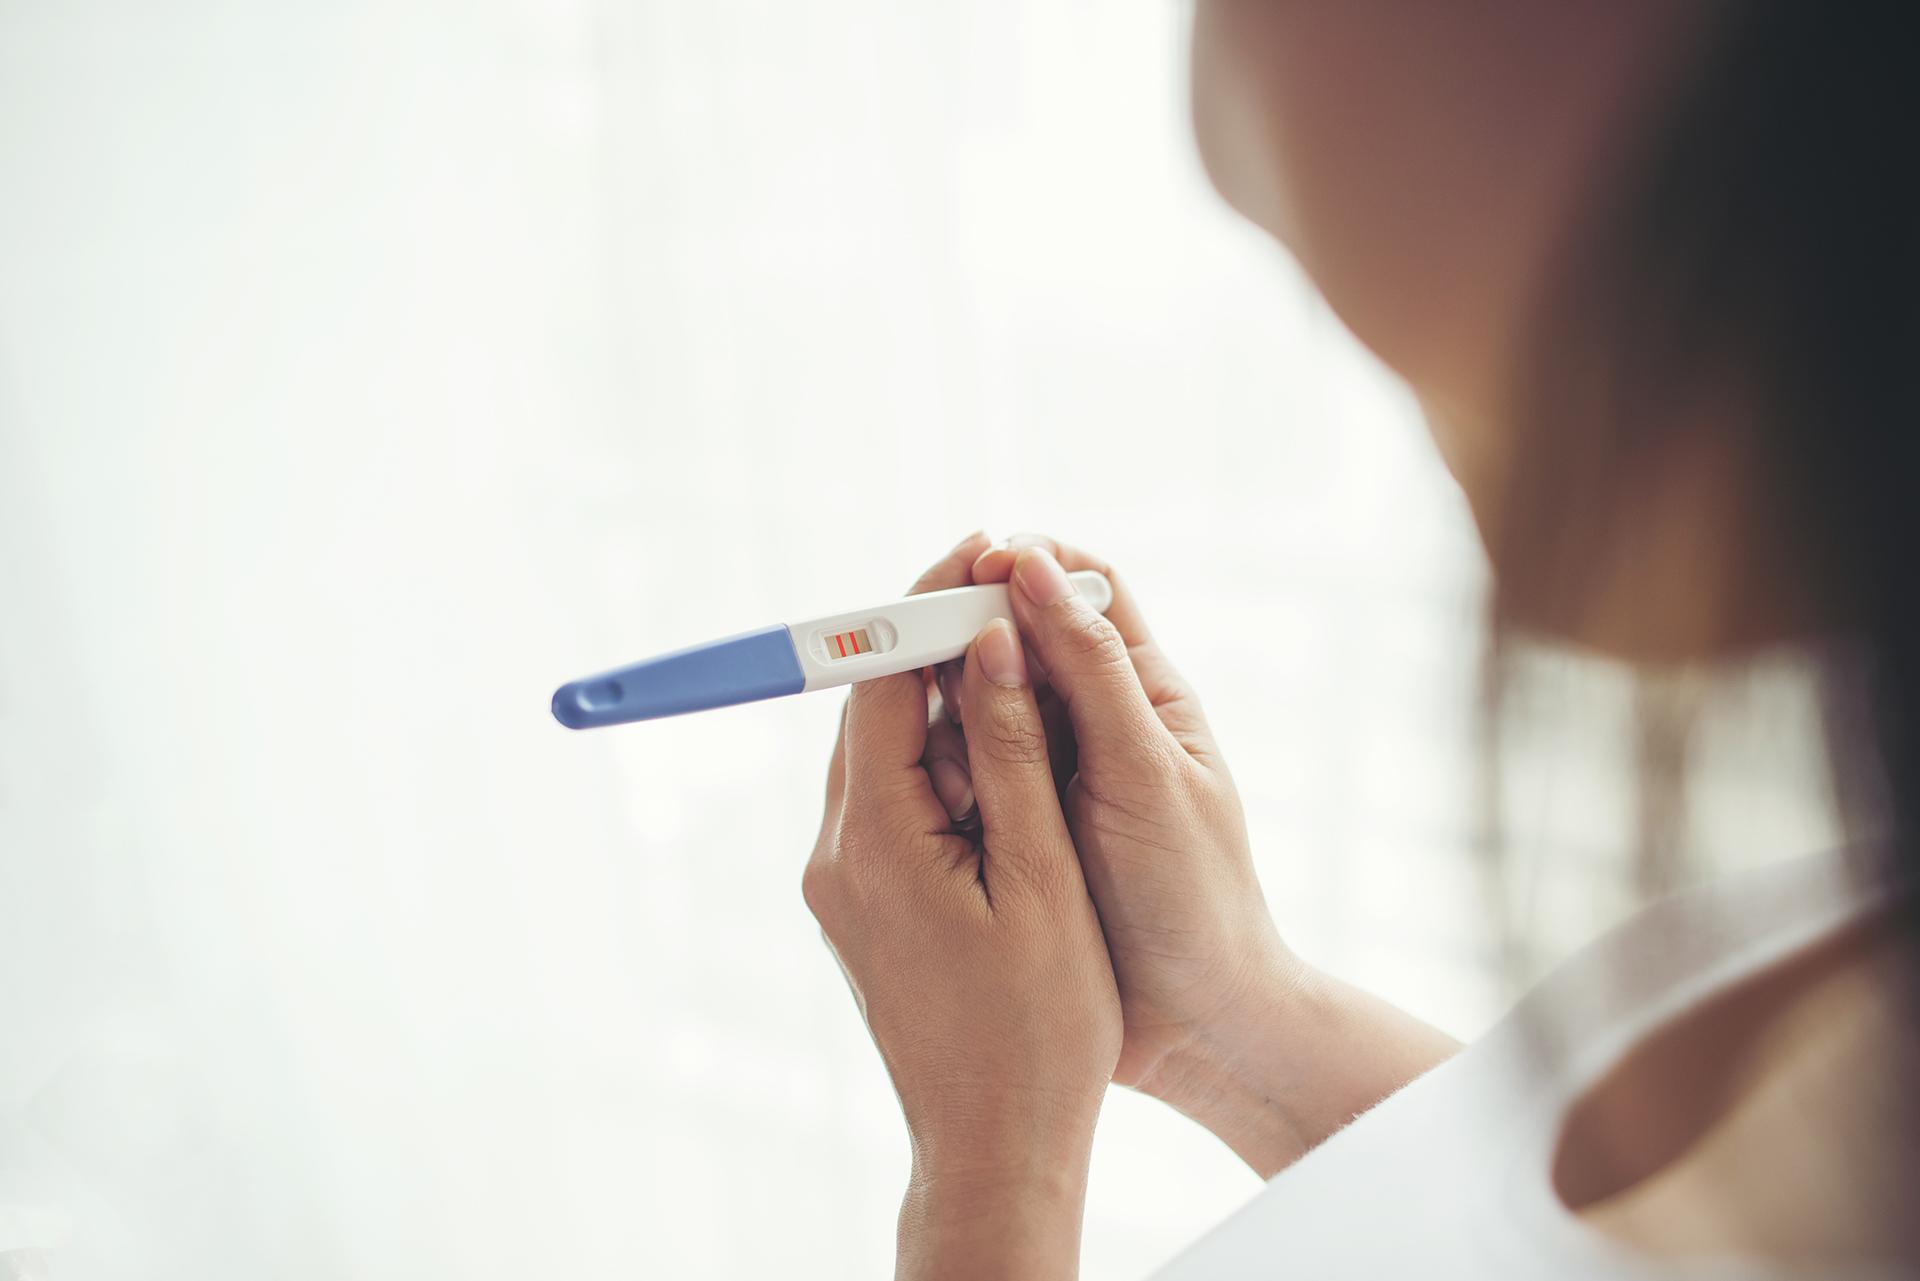 नियमित कालावधीसह PCOS: तुम्ही गर्भवती होऊ शकता का? आपल्याला माहित असणे आवश्यक आहे